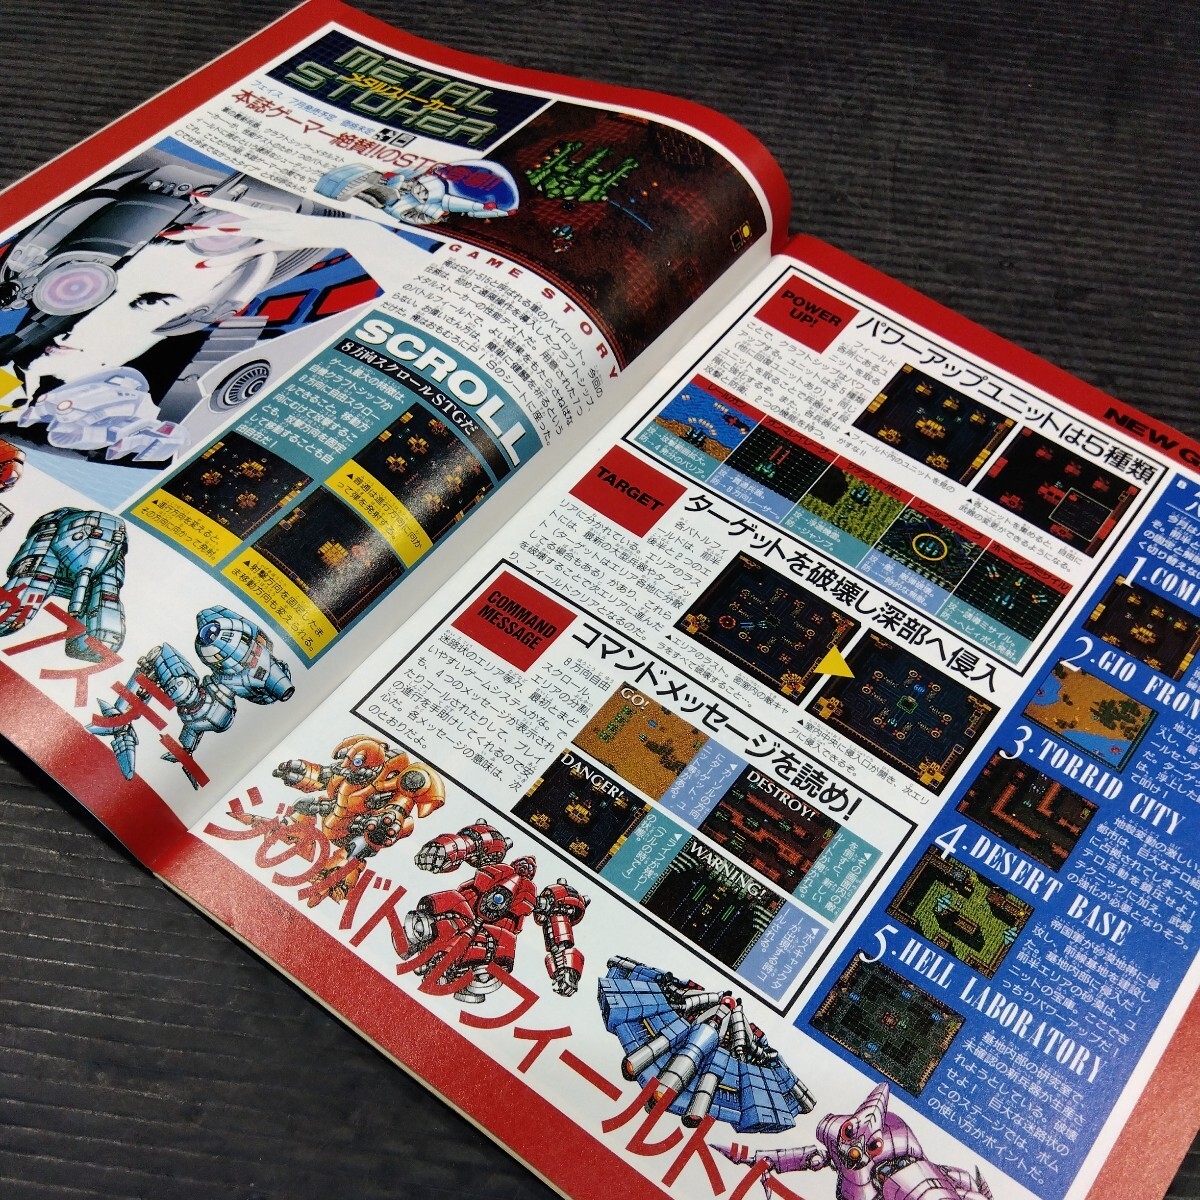 PCエンジン歴史書 1991年7月号 別冊付録付 月刊PCエンジン 雑誌 CD-ROM2 ゲーム 解説 攻略 PC原人2 ソーサリアン F1サーカス'91の画像5